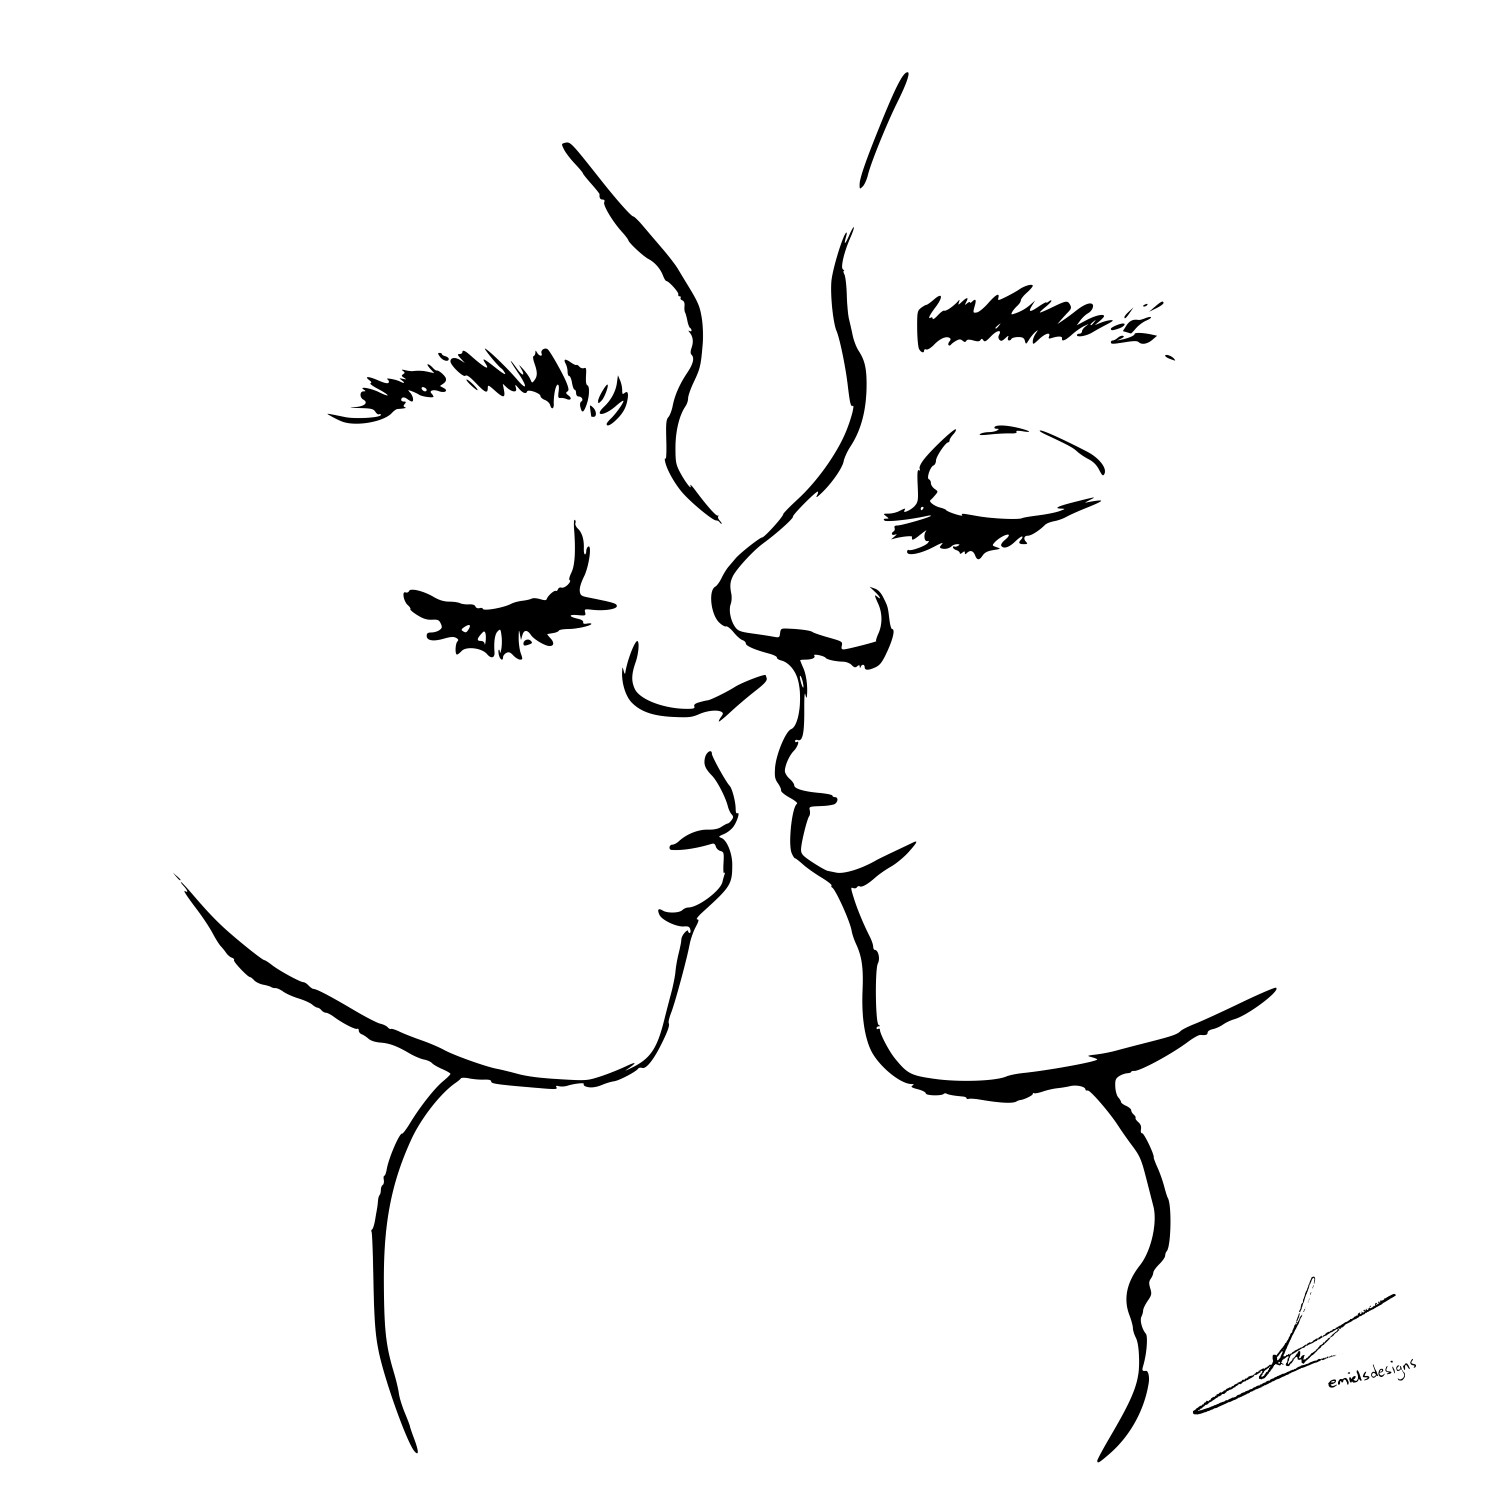 Romantisch kunstwerk - bijna een kus - zwarte inkt